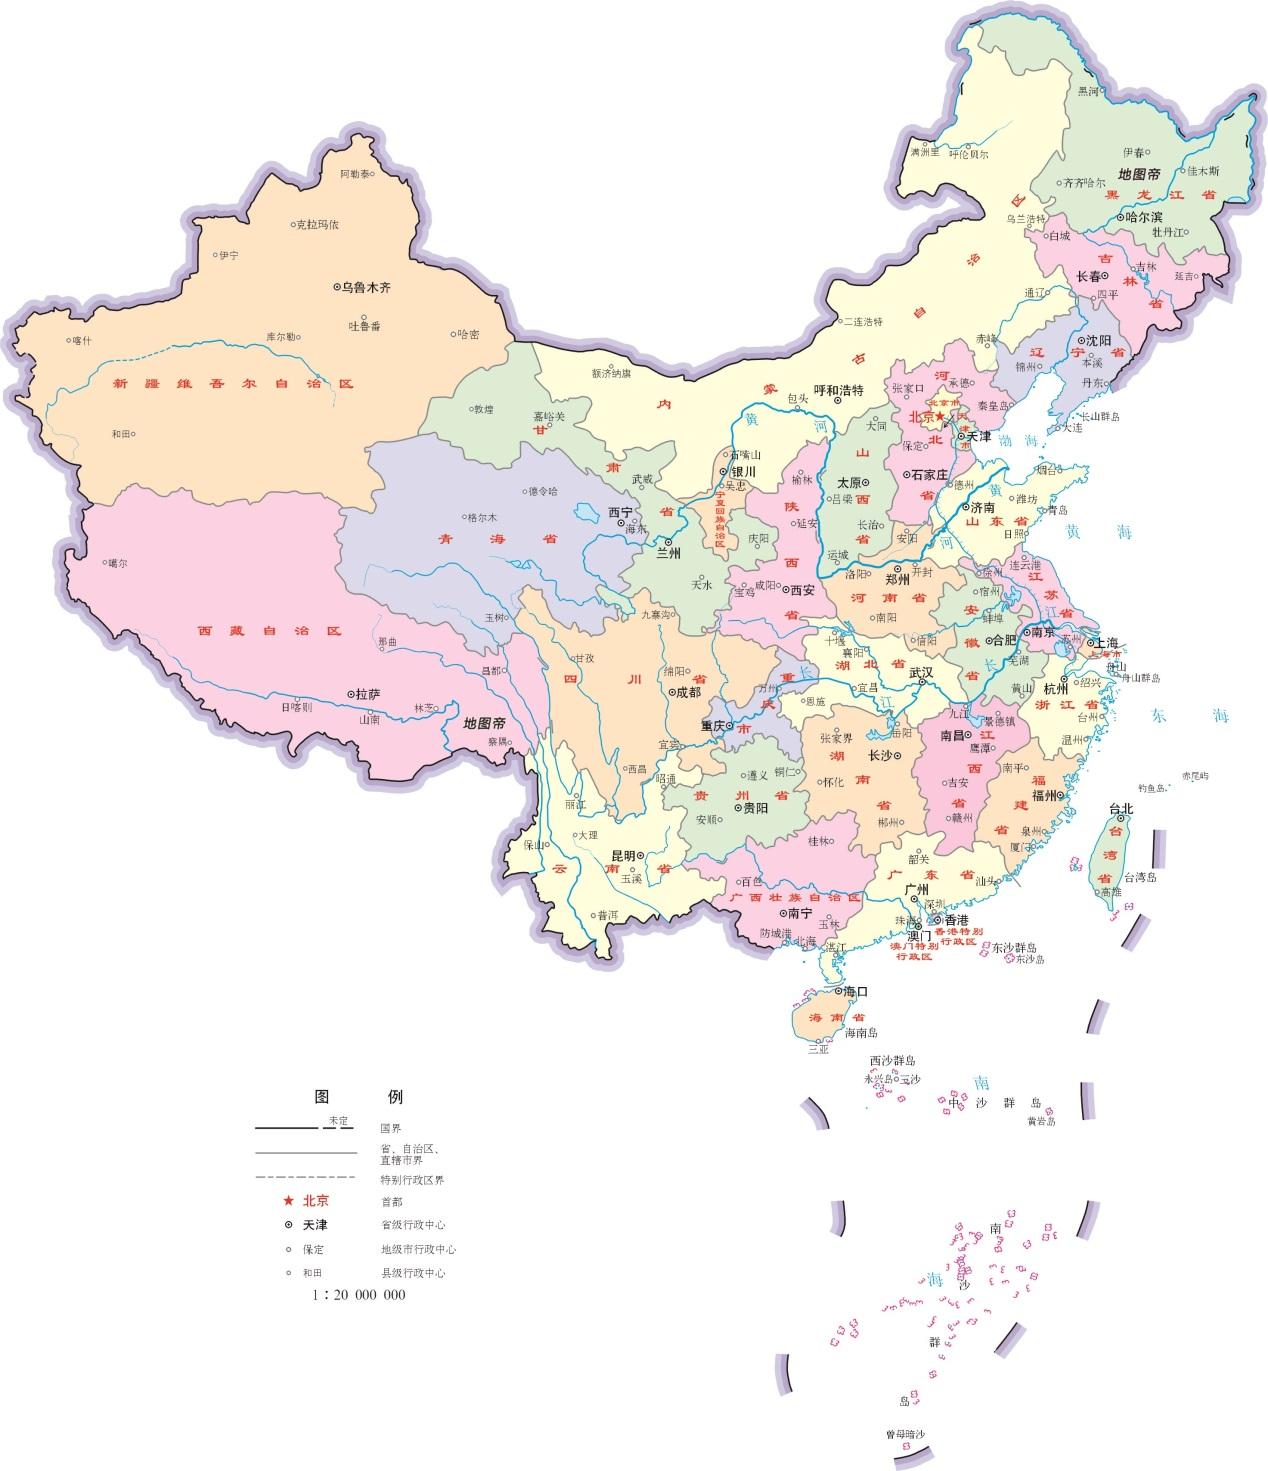 江西省位于长江南岸,和湖南,湖北,安徽,浙江,福建,广东几个省相邻.图片